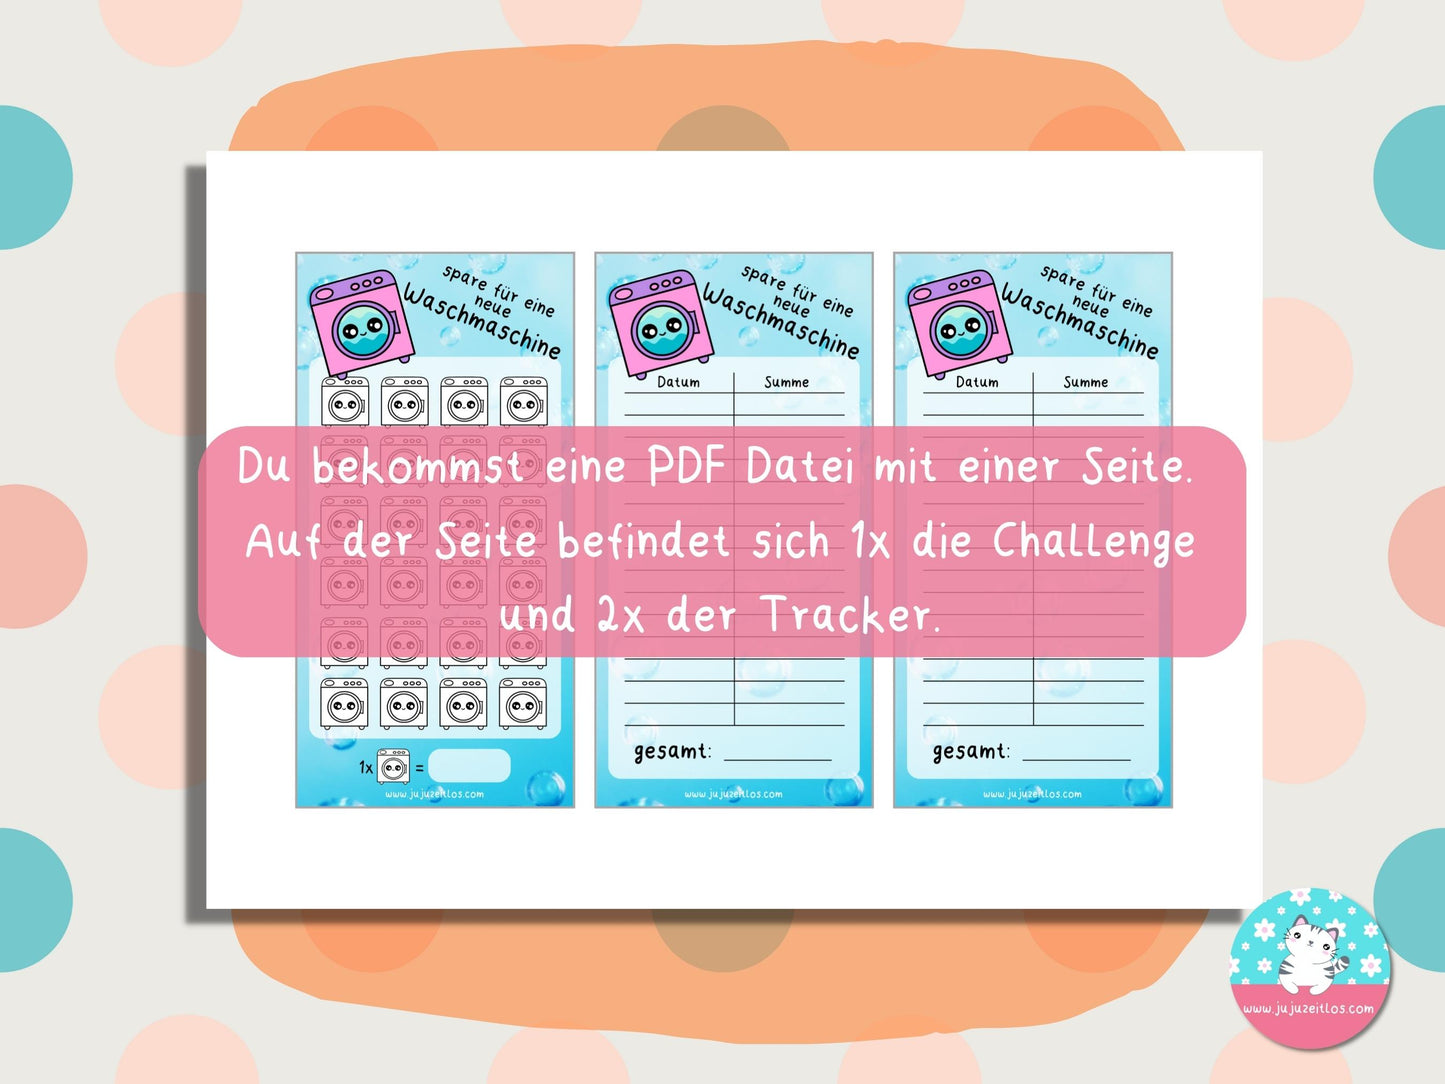 Challenge neue Waschmaschine ♡Sparschallenges als Download A6♡ - JujuZeitlos